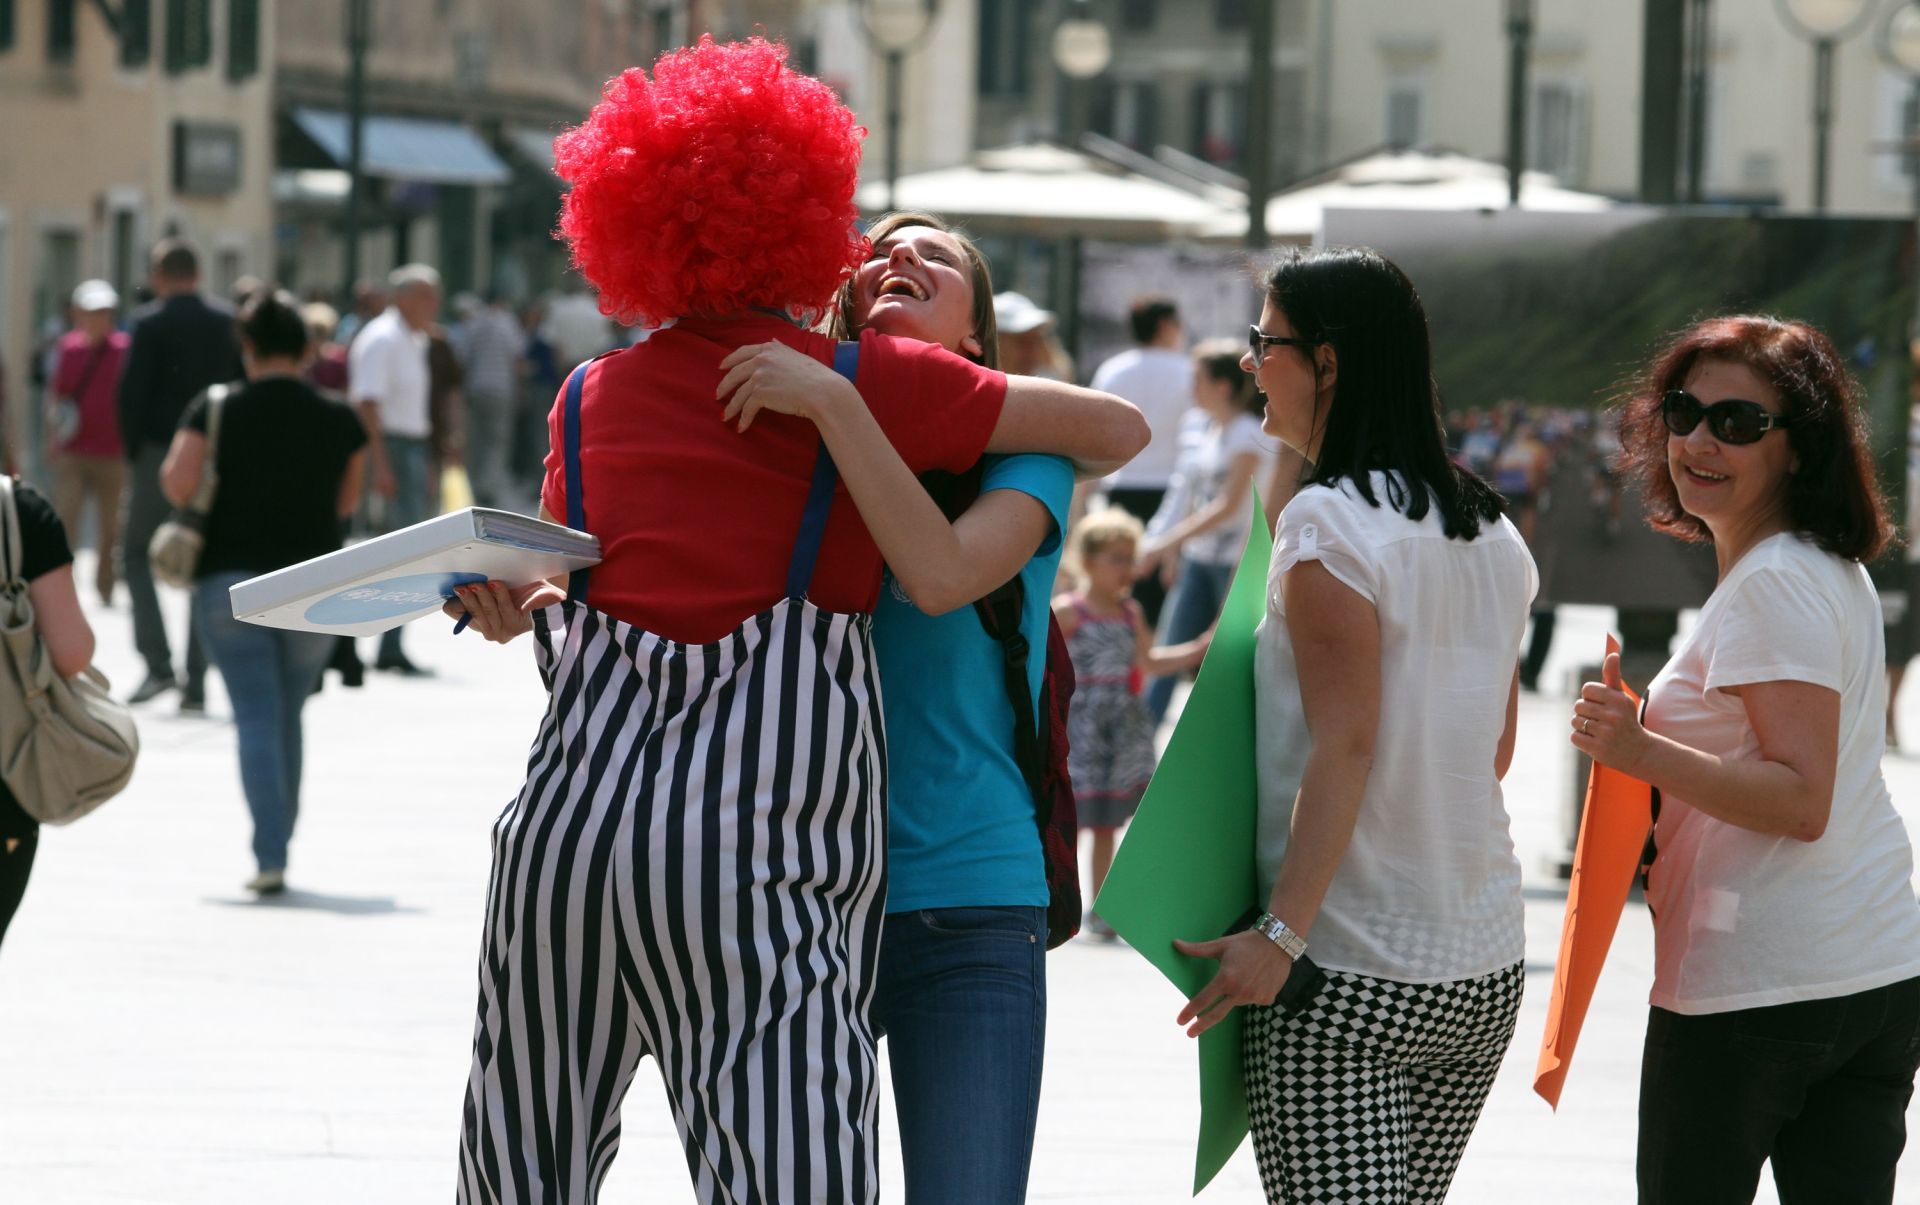 19.05.2015., Rijeka - Clanovi udruge Hrvatska volontira i Udruge za bolji svijet na Korzu su odrzali akciju besplatnih zagrljaja Free Hugs.
Photo: Goran Kovacic/PIXSELL